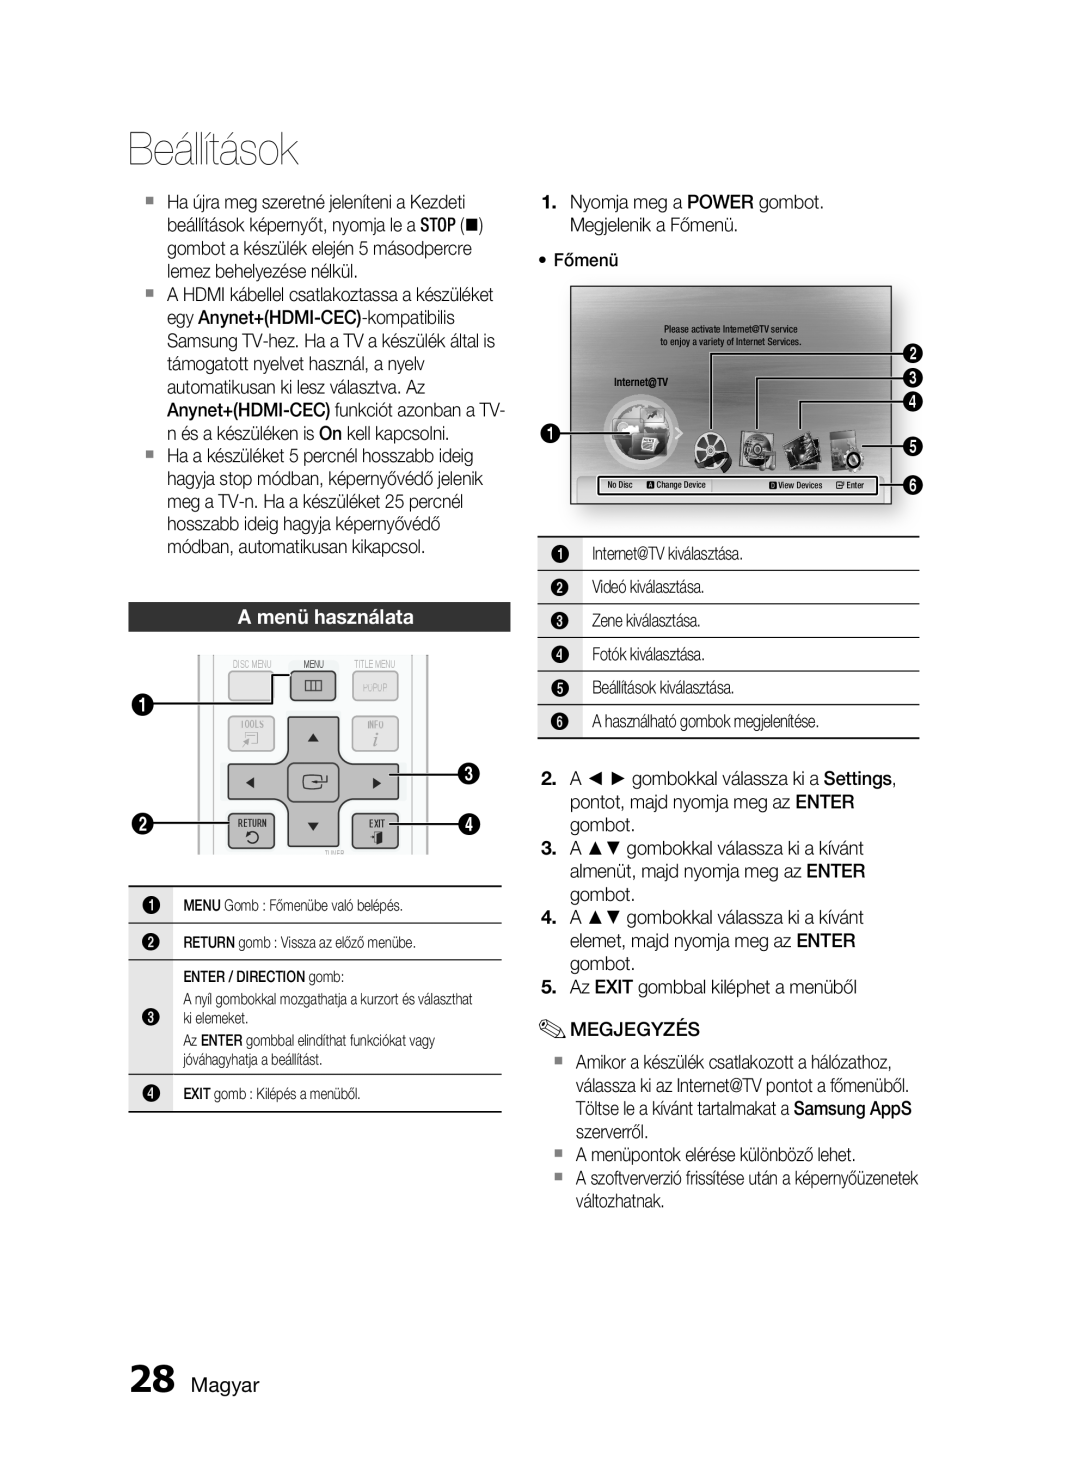 Samsung HT-C5900/XEF, HT-C5900/XEE manual A menü használata, Magyar, Beállítások 